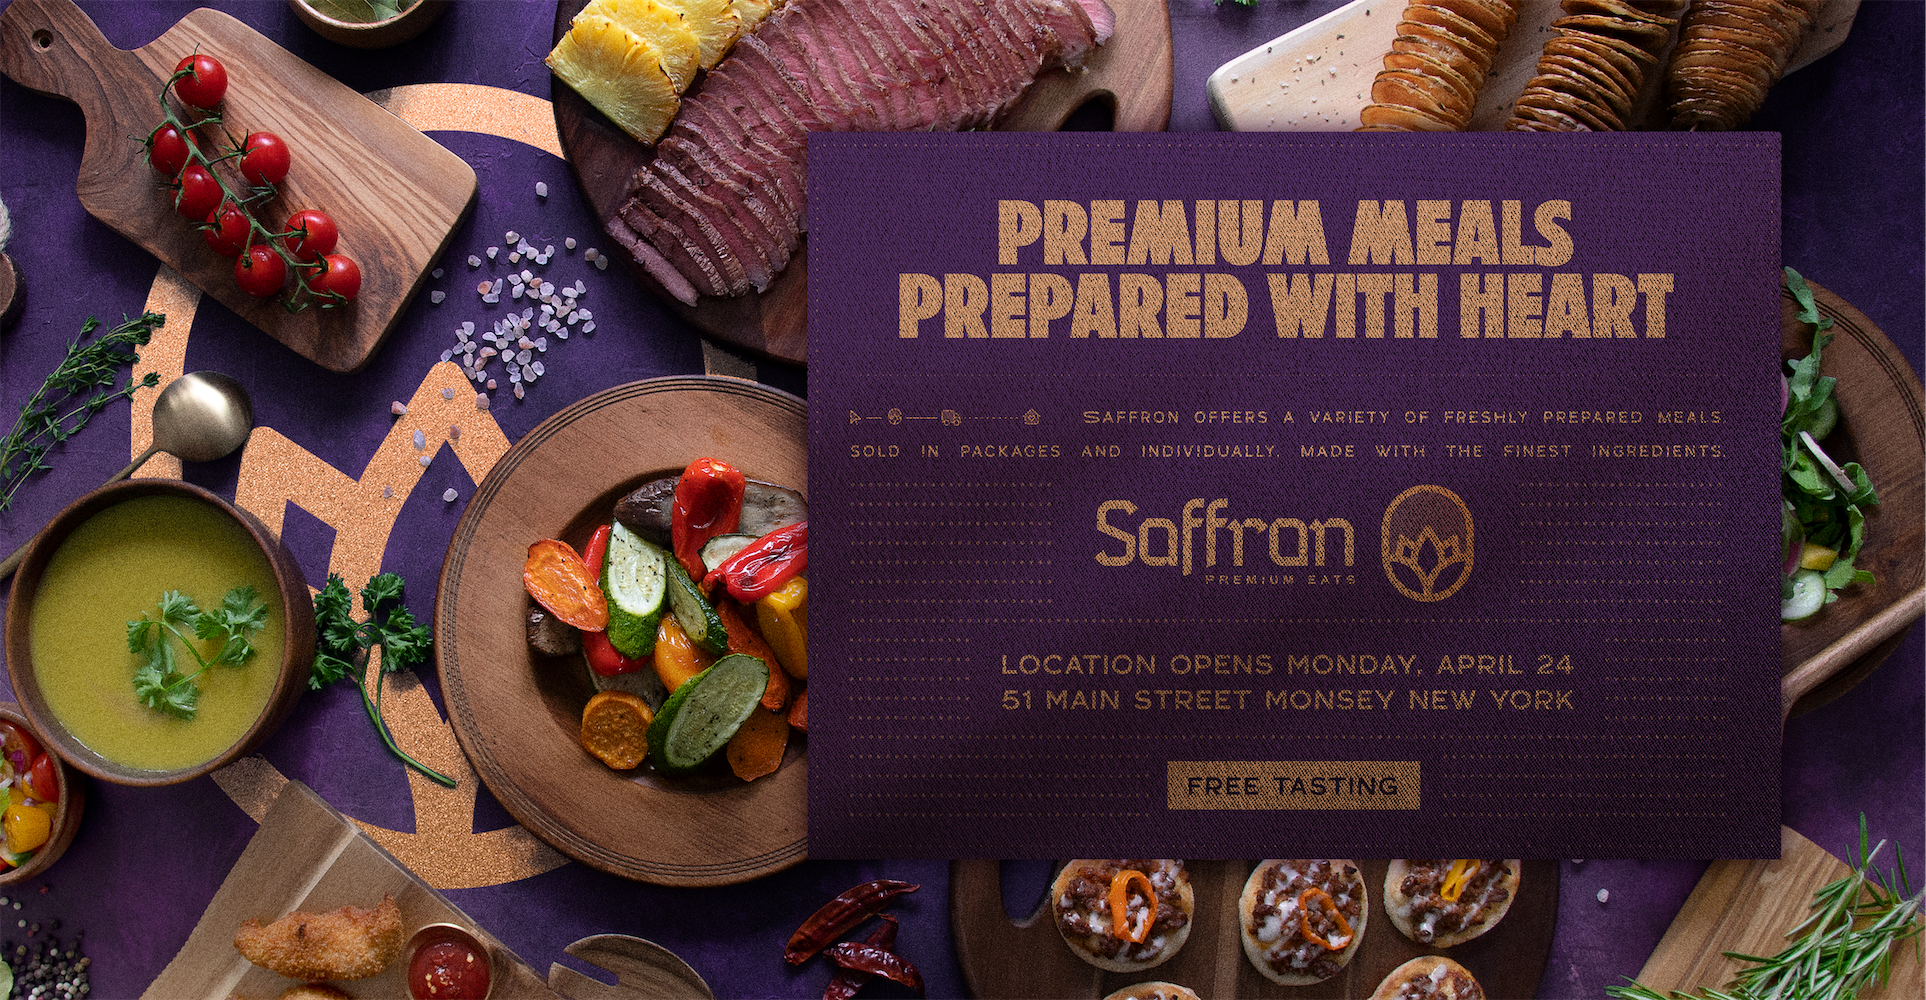 Saffron Premium Eats advertisement